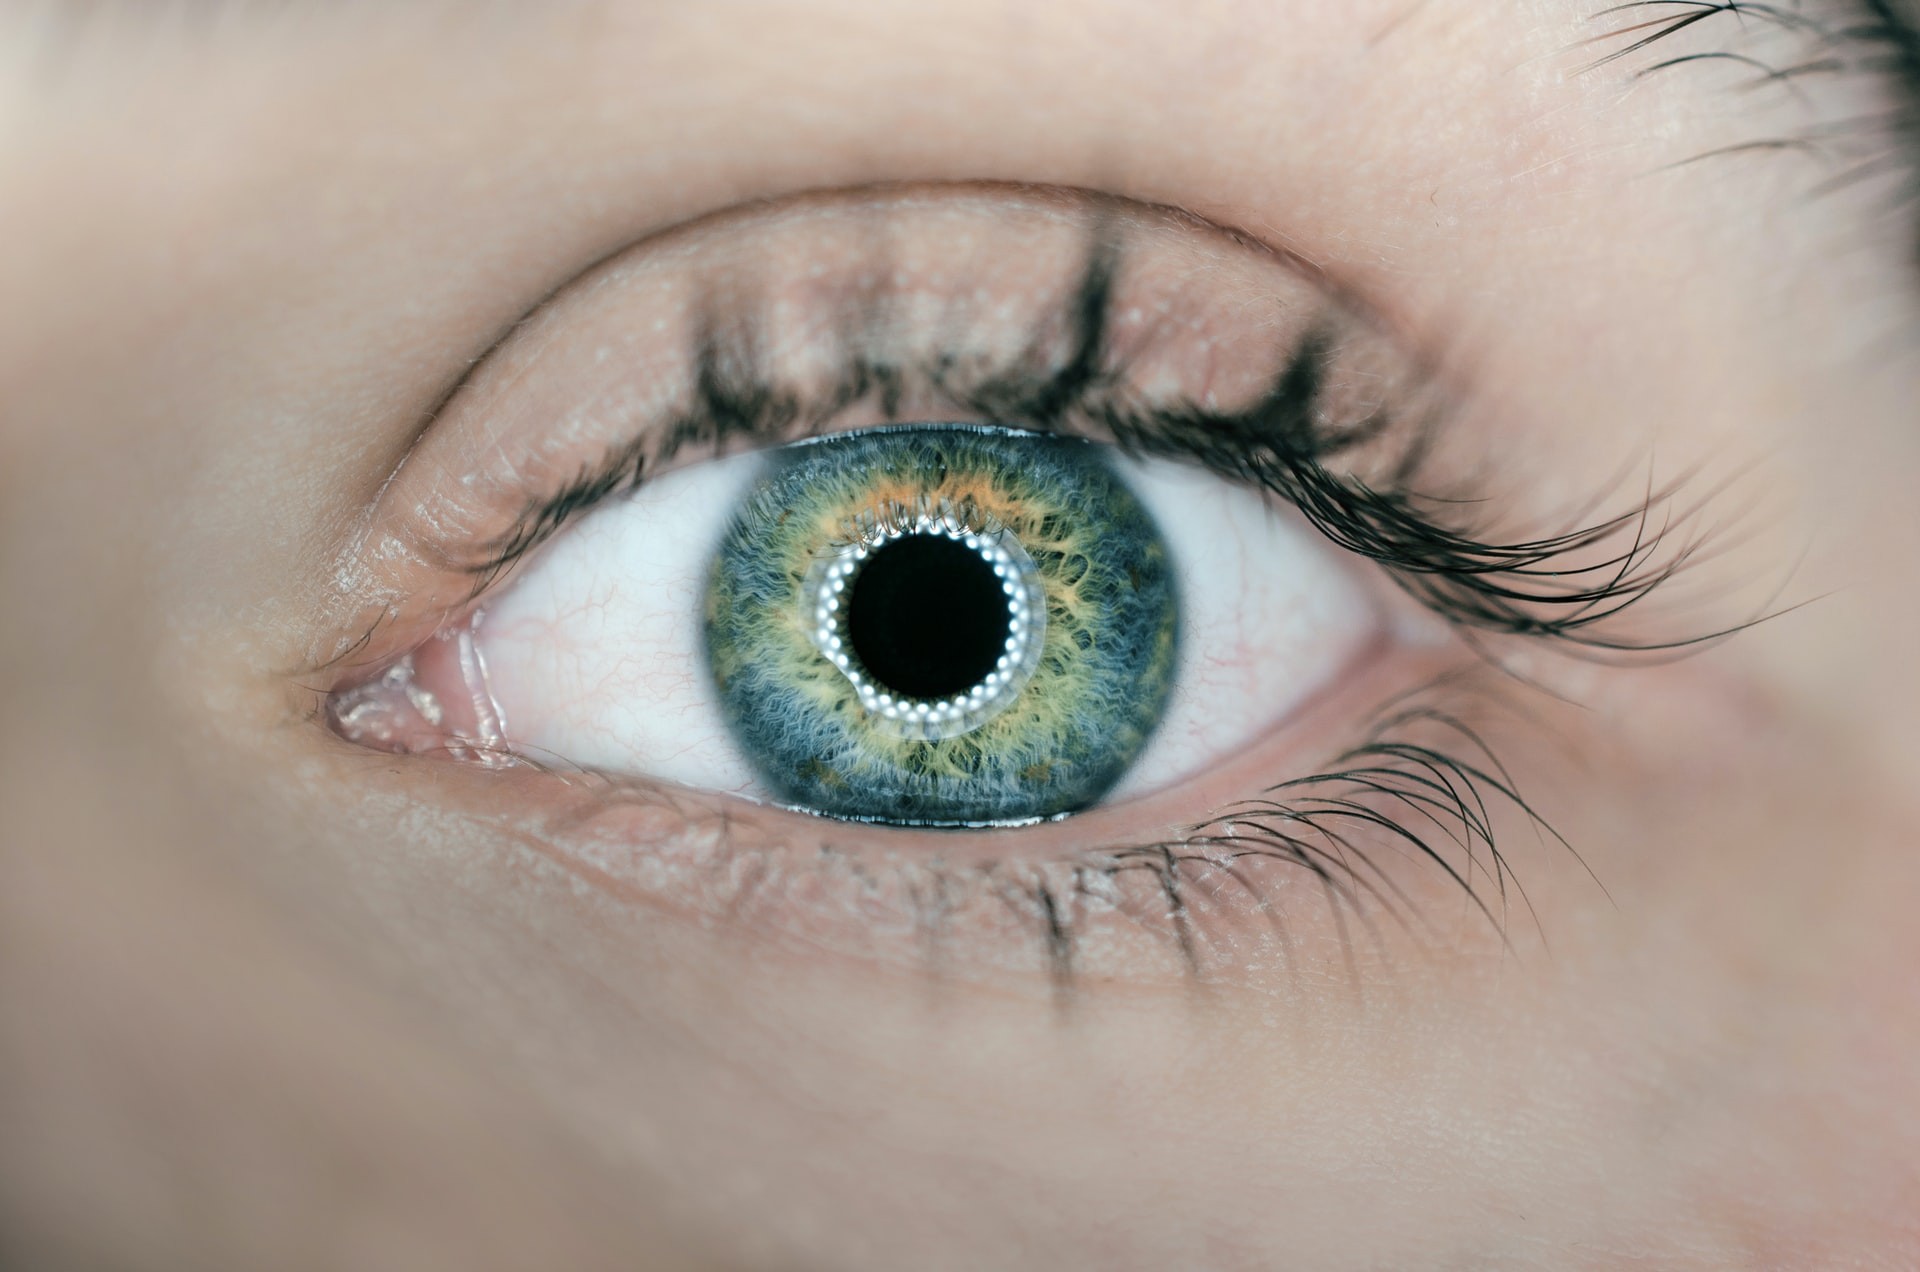 المحافظة على صحة العين